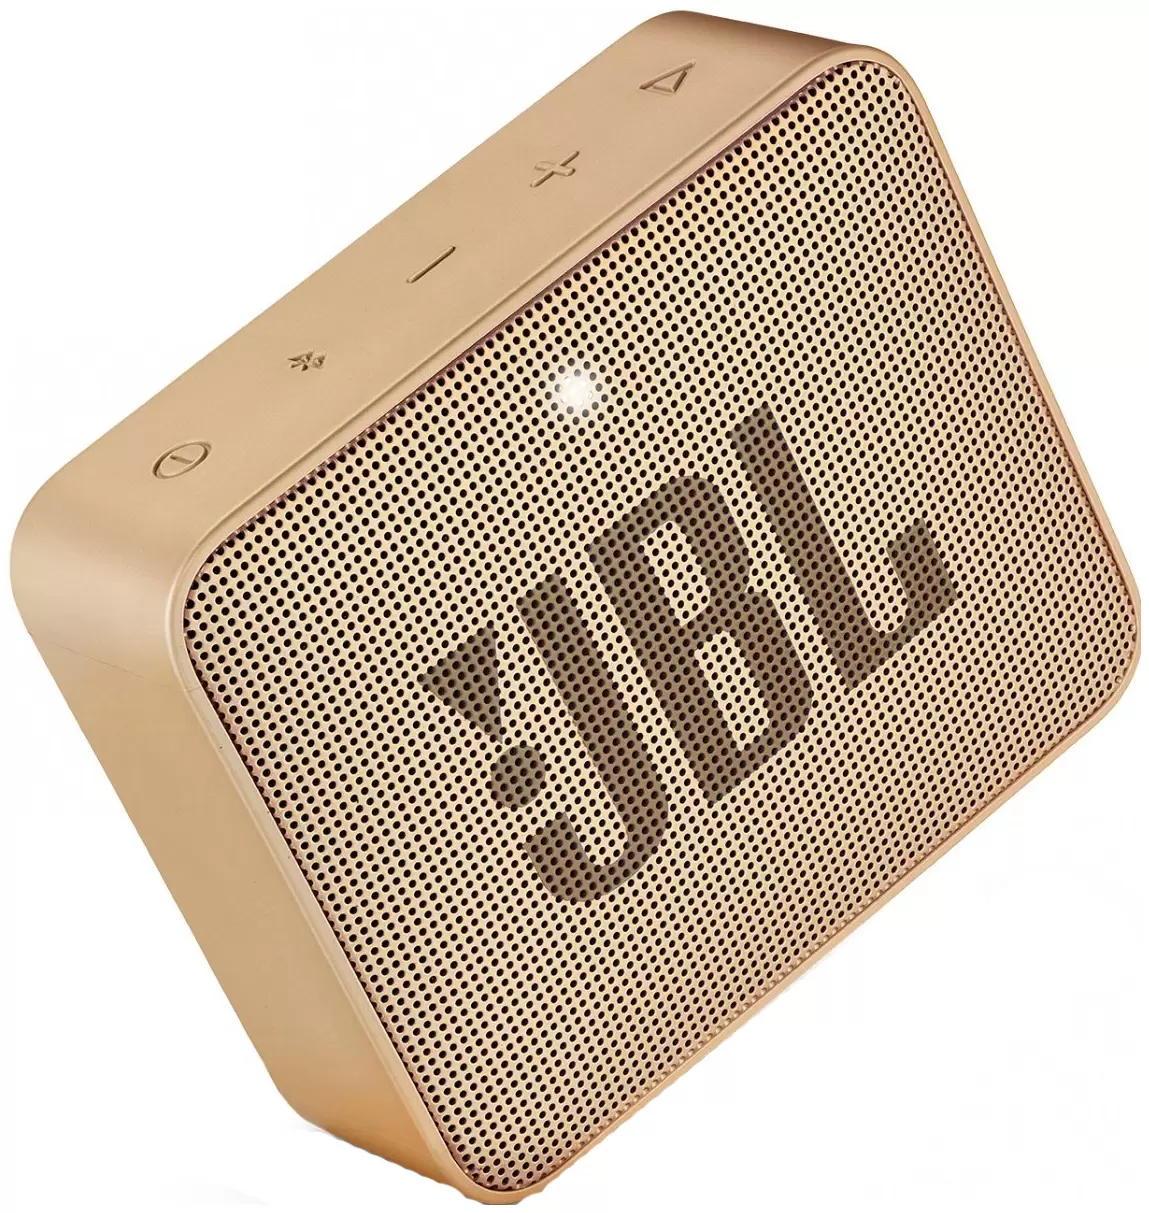 Портативная колонка JBL GO 2 Бронза в Челябинске купить по недорогим ценам с доставкой